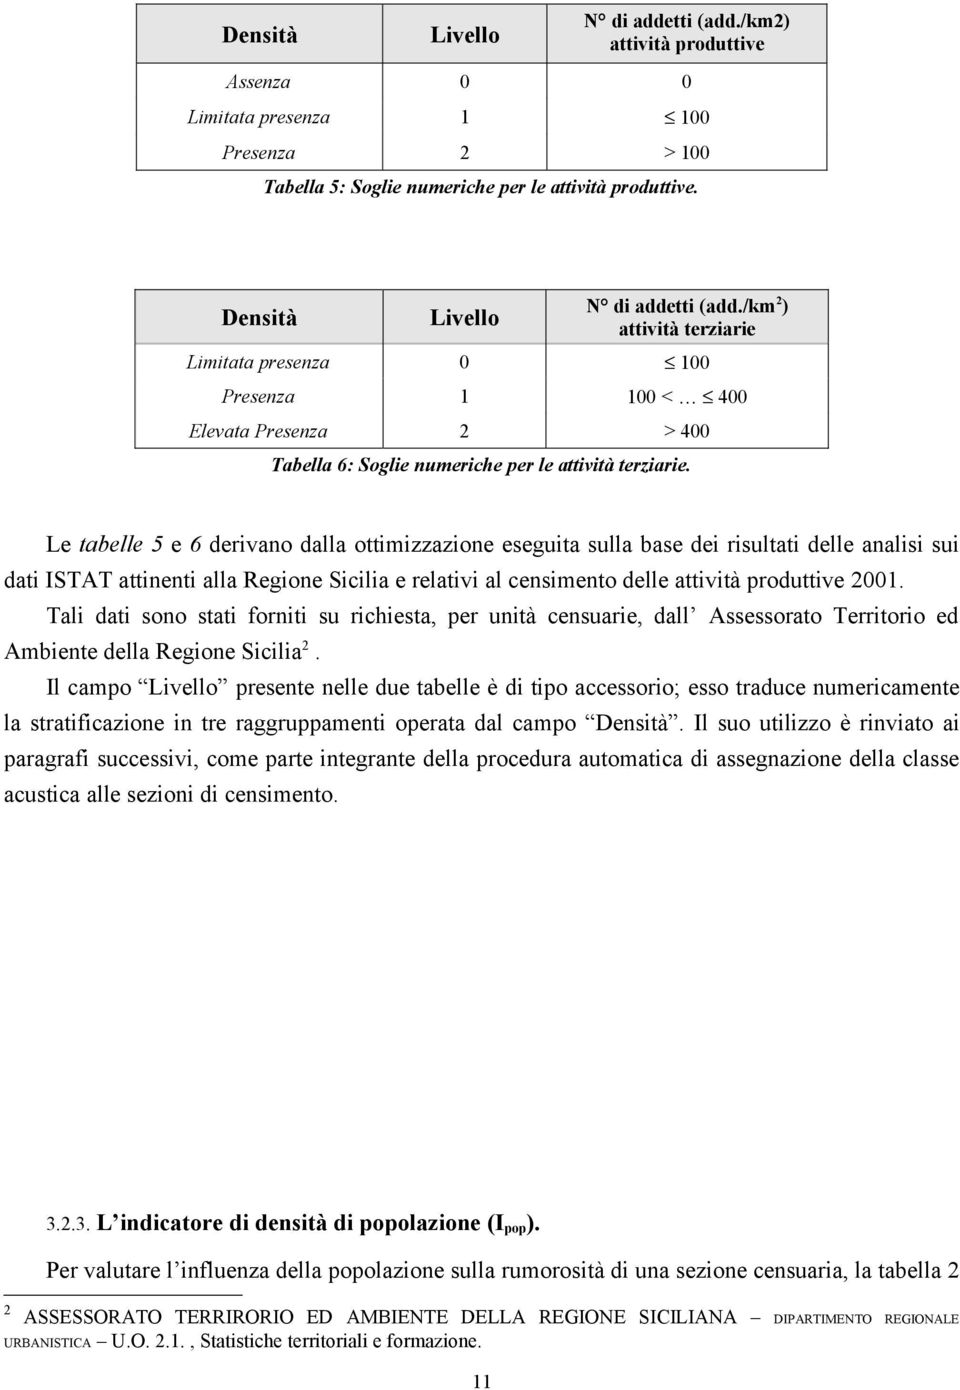 Le tabelle 5 e 6 derivano dalla ottimizzazione eseguita sulla base dei risultati delle analisi sui dati ISTAT attinenti alla Regione Sicilia e relativi al censimento delle attività produttive 2001.